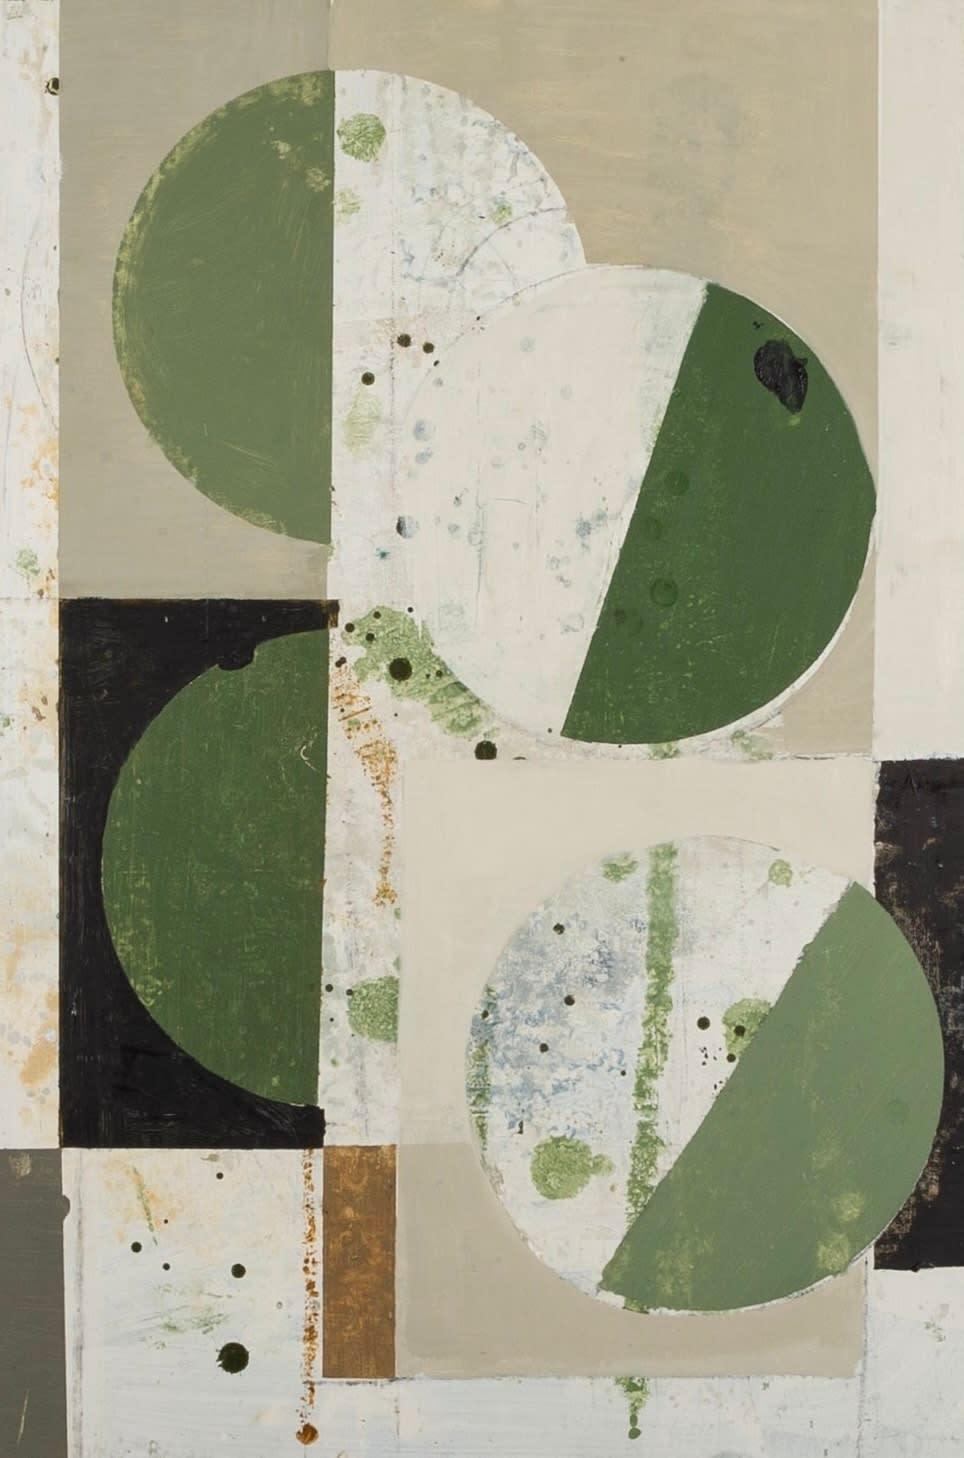 Abstrakter Baum mit Grünen Gemälde von Daisy Cook B. 1965, 2023

Zusätzliche Informationen:
Medium: Öl auf Karton
Abmessungen:60 x 40 cm
23 5/8 x 15 3/4 Zoll

Daisy Cook ist eine britische Malerin von Landschaften und Stillleben.

Cook schafft